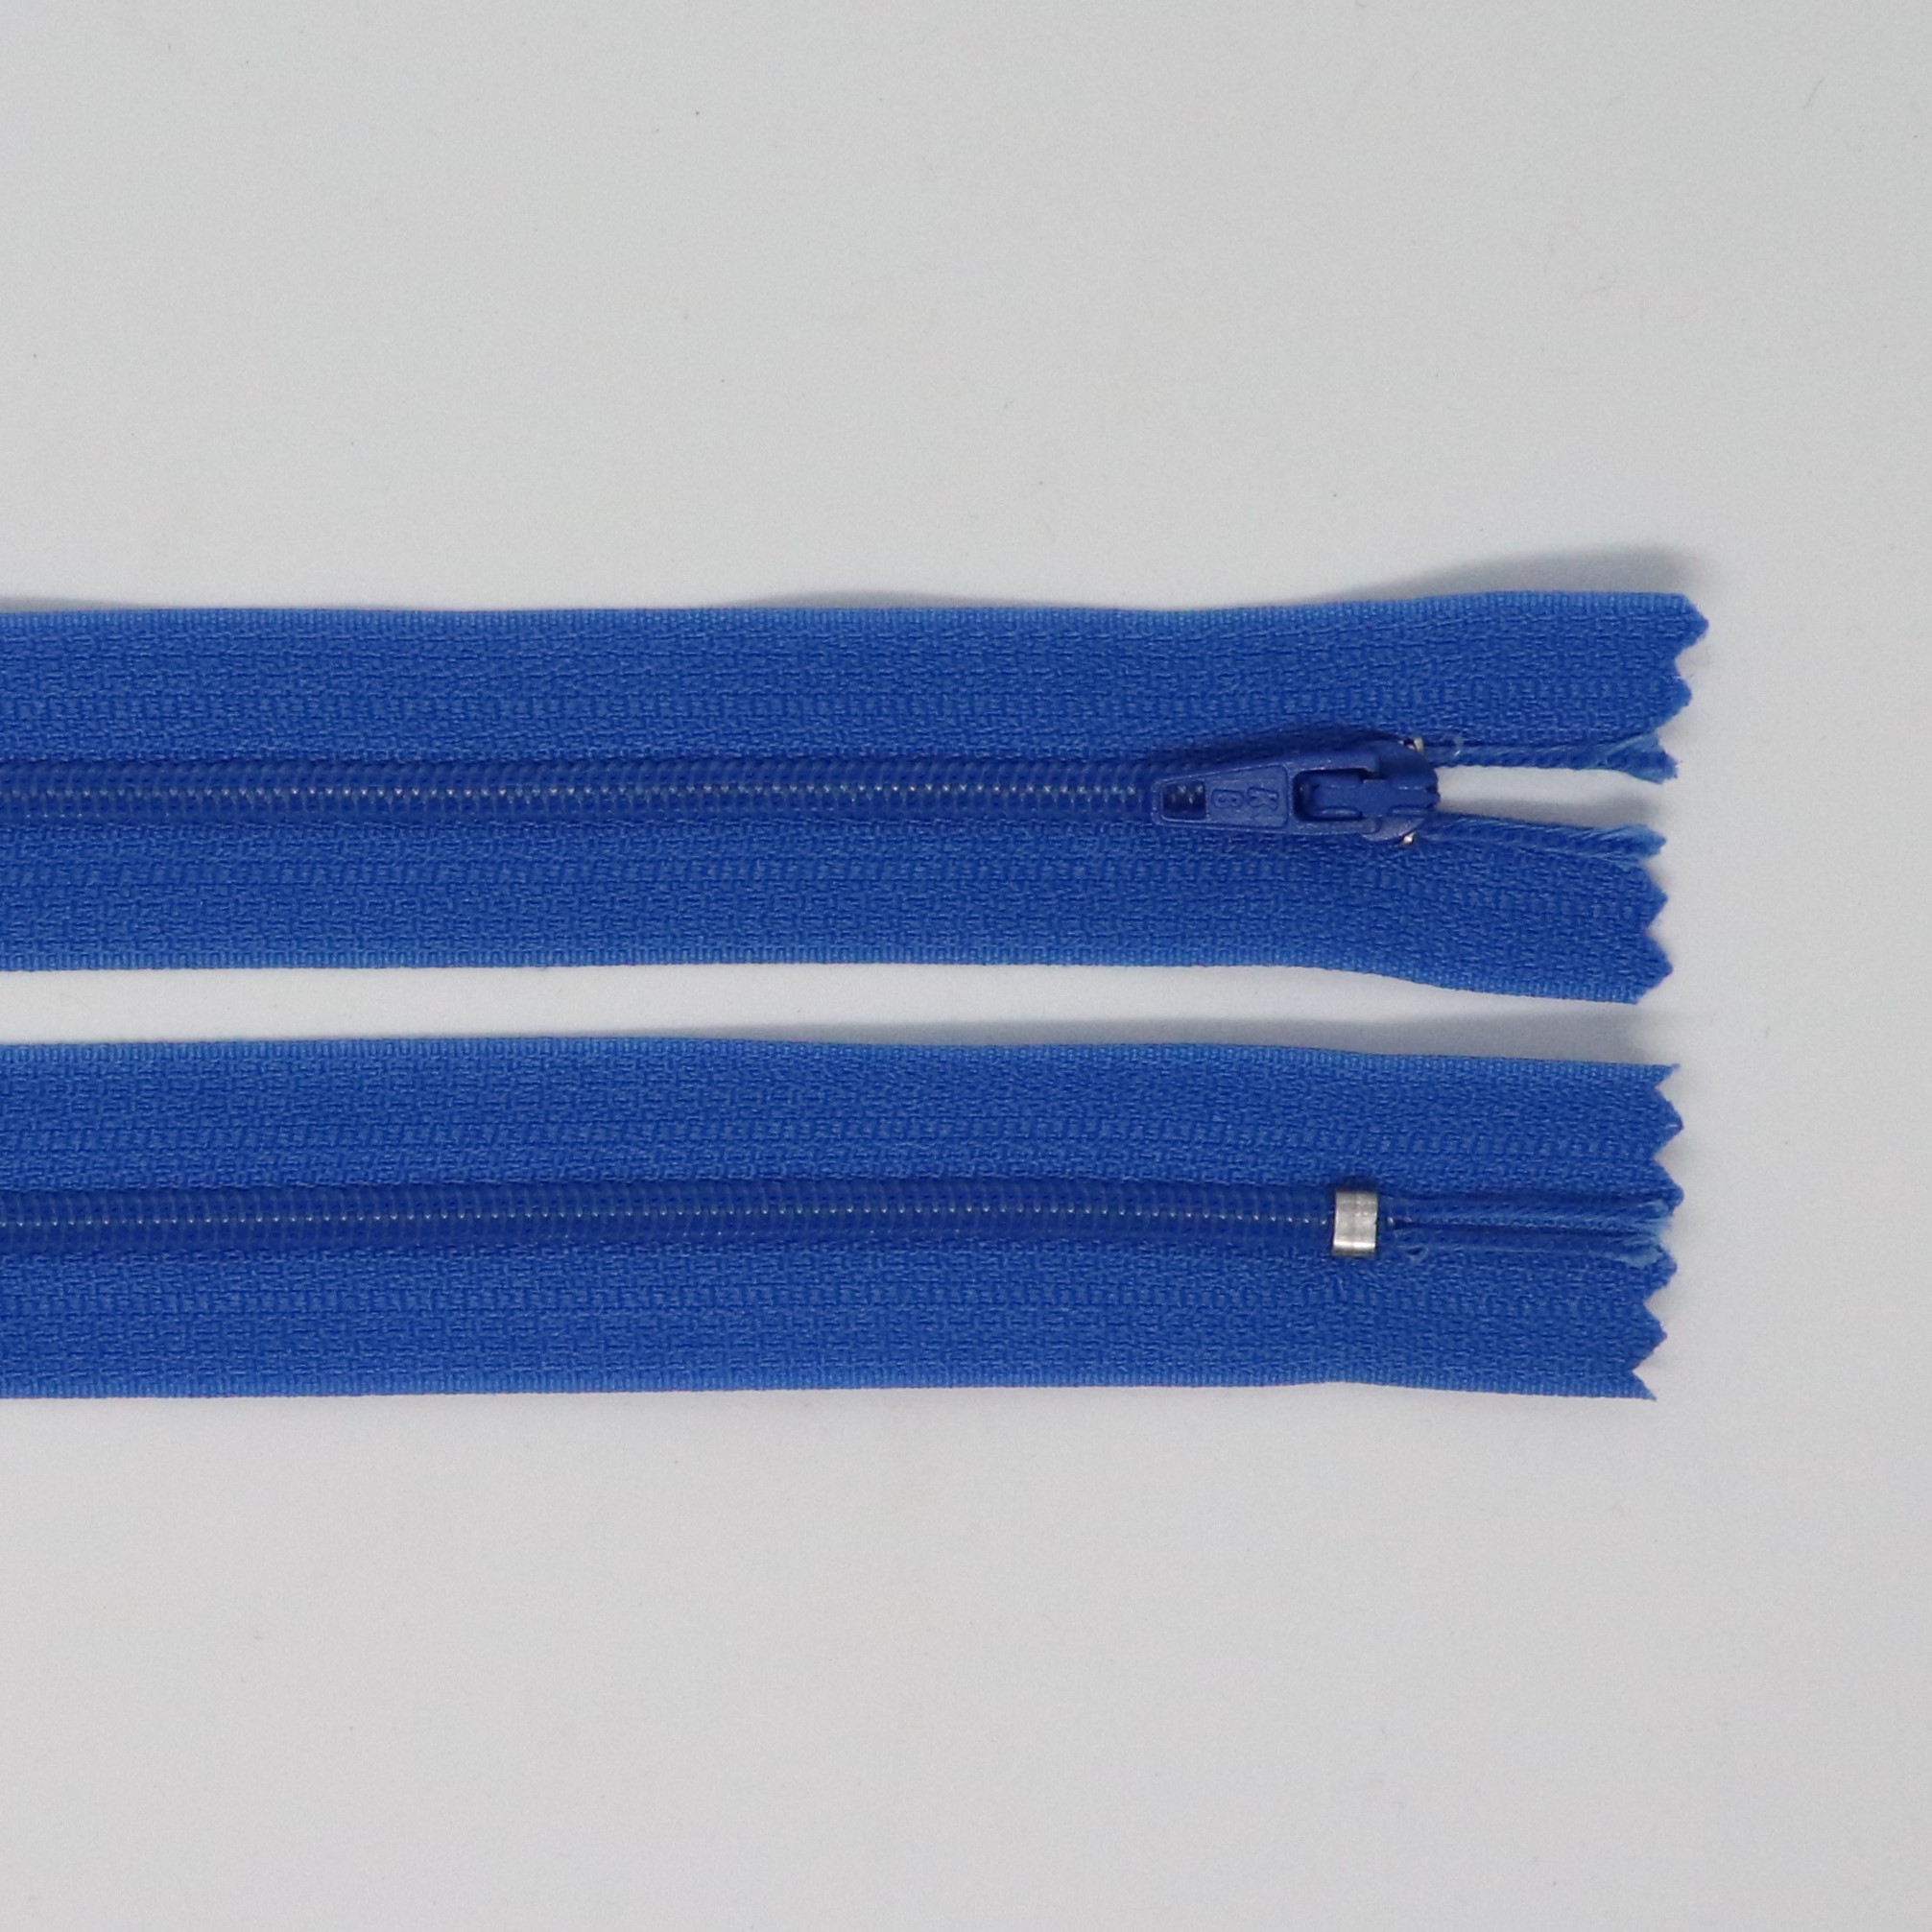 Spirálový zip, šíøe 3 mm, délka 30 cm, modrá - zvìtšit obrázek